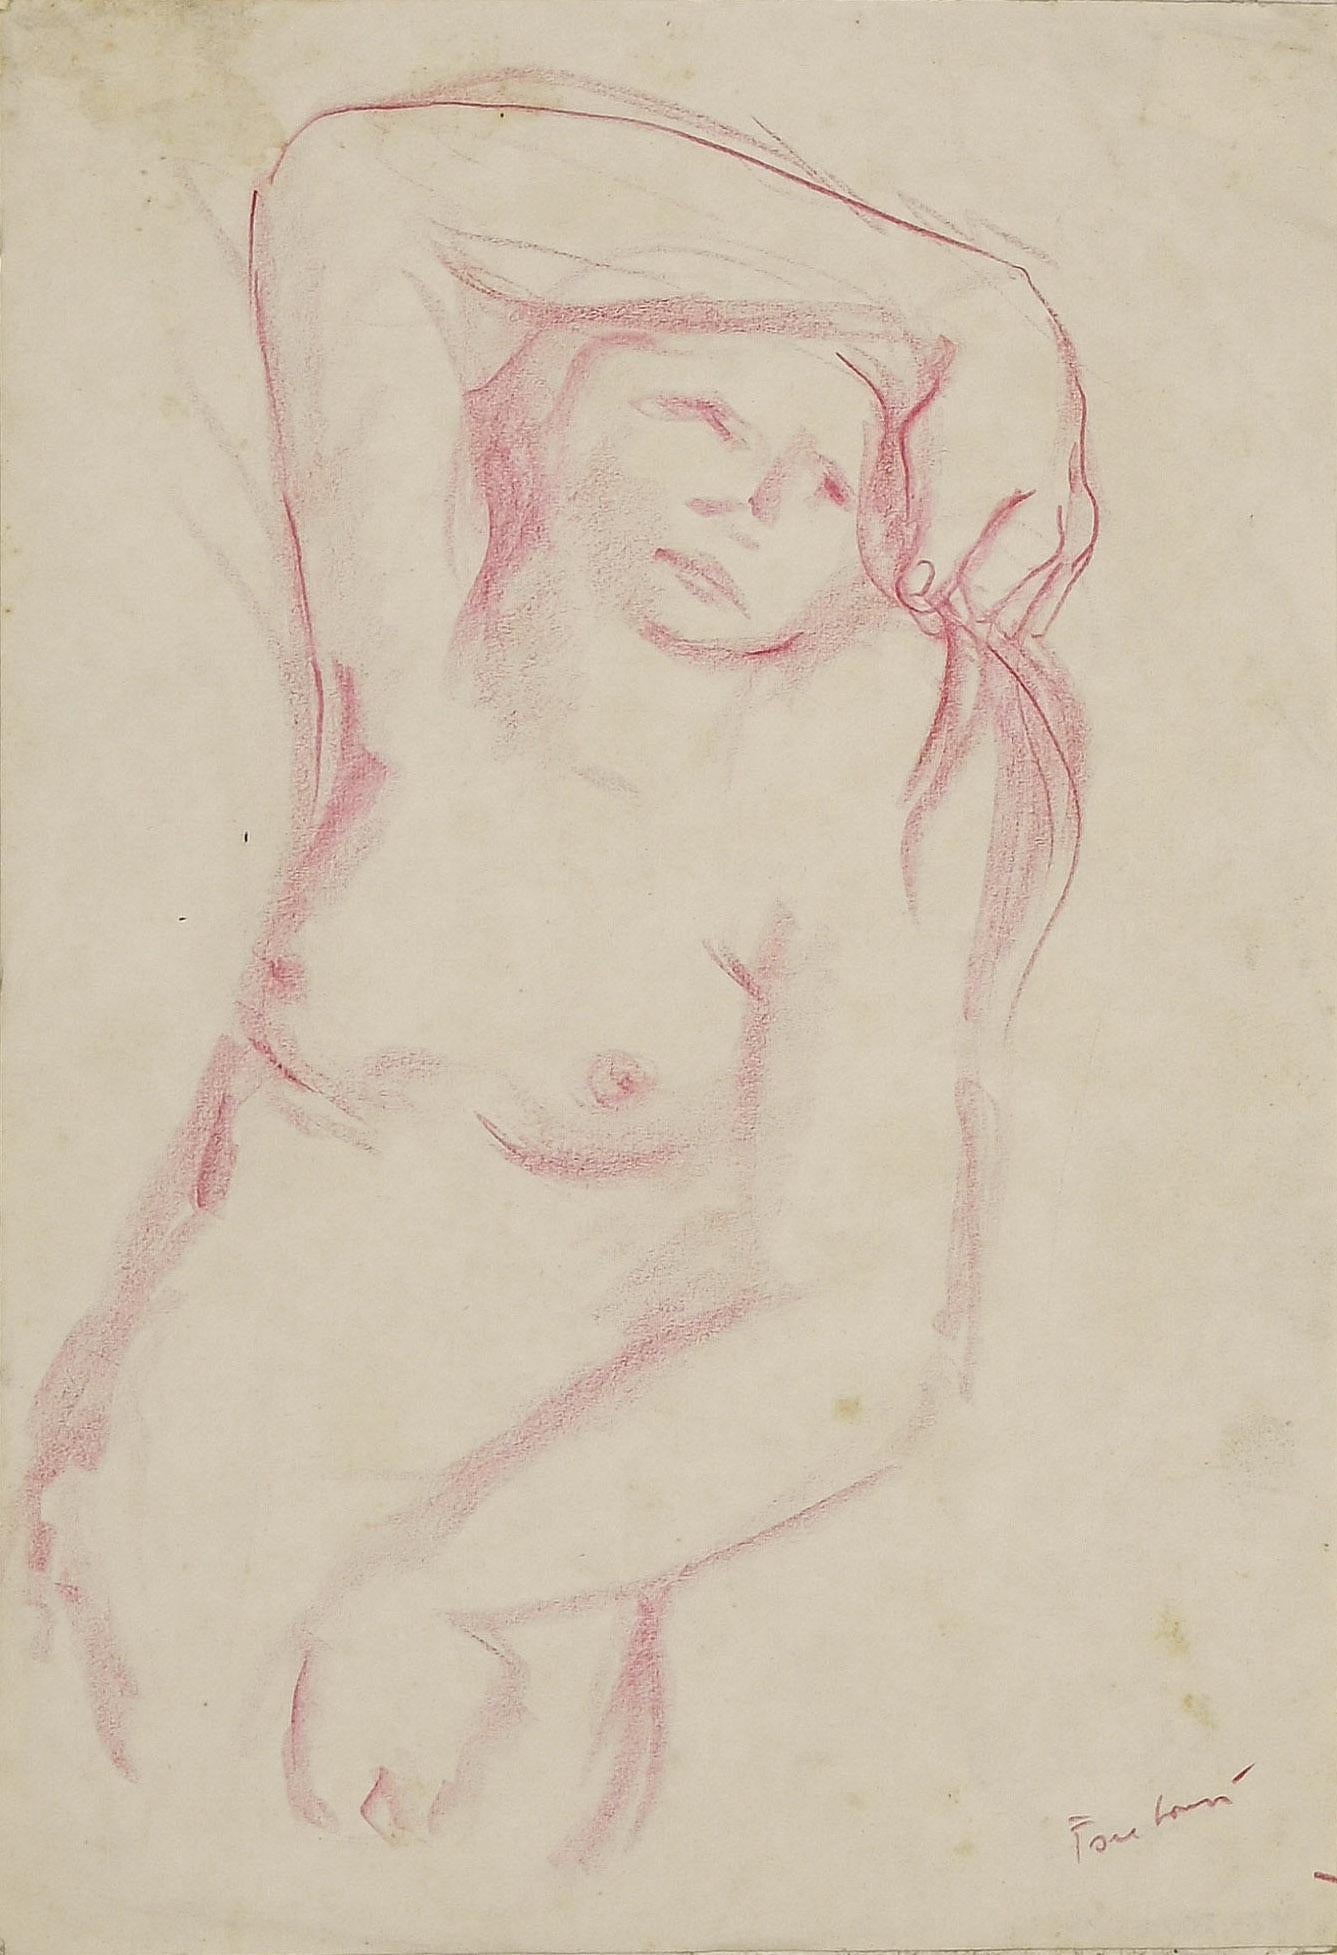 Akt einer Frau ist eine Pastellzeichnung auf elfenbeinfarbenem Papier von Voltolino Fontani (1920-1976).

In gutem Zustand.

Dies ist eine Originalzeichnung, die einen schönen Frauenakt darstellt.

Handsigniert am unteren rechten Rand.

Voltolino